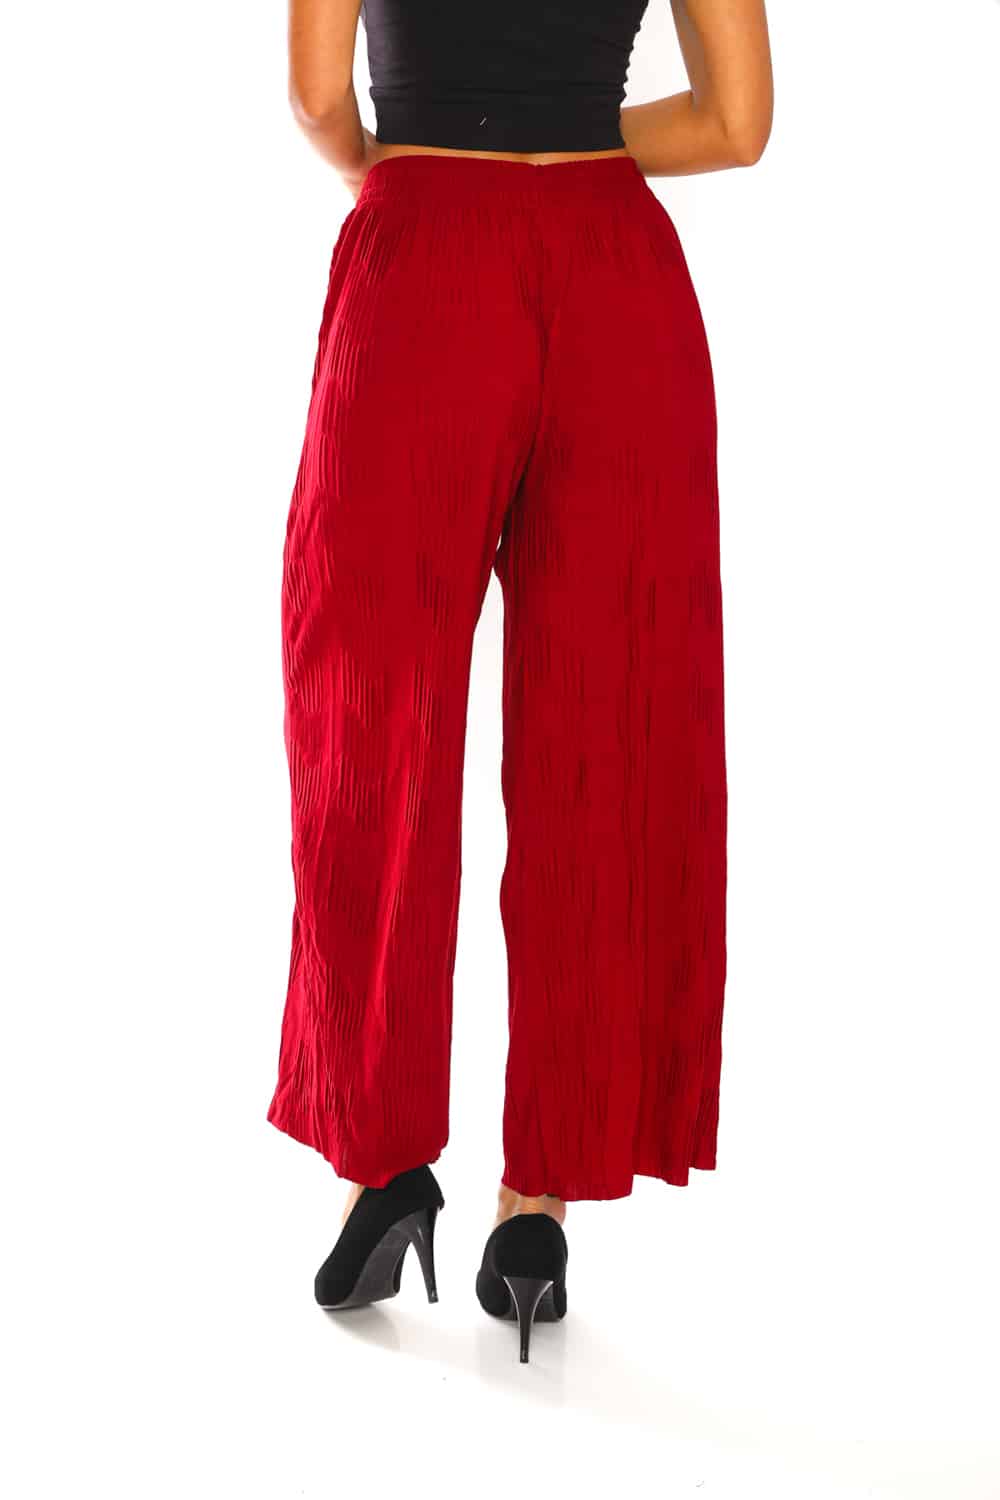 Women's Pleats Flowy Wide Pants - 4